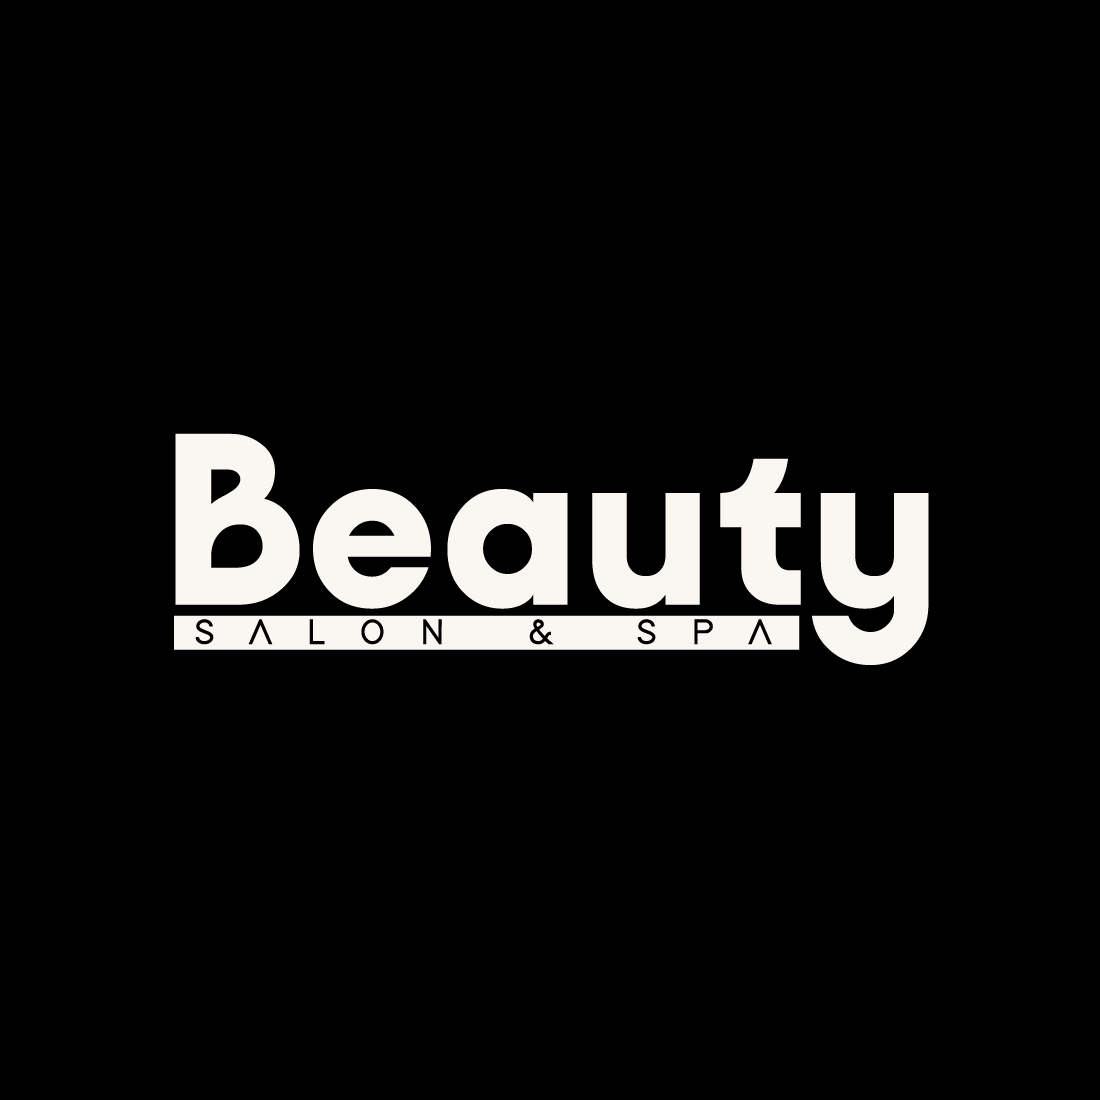 Beauty Logo Vector Design main cover.